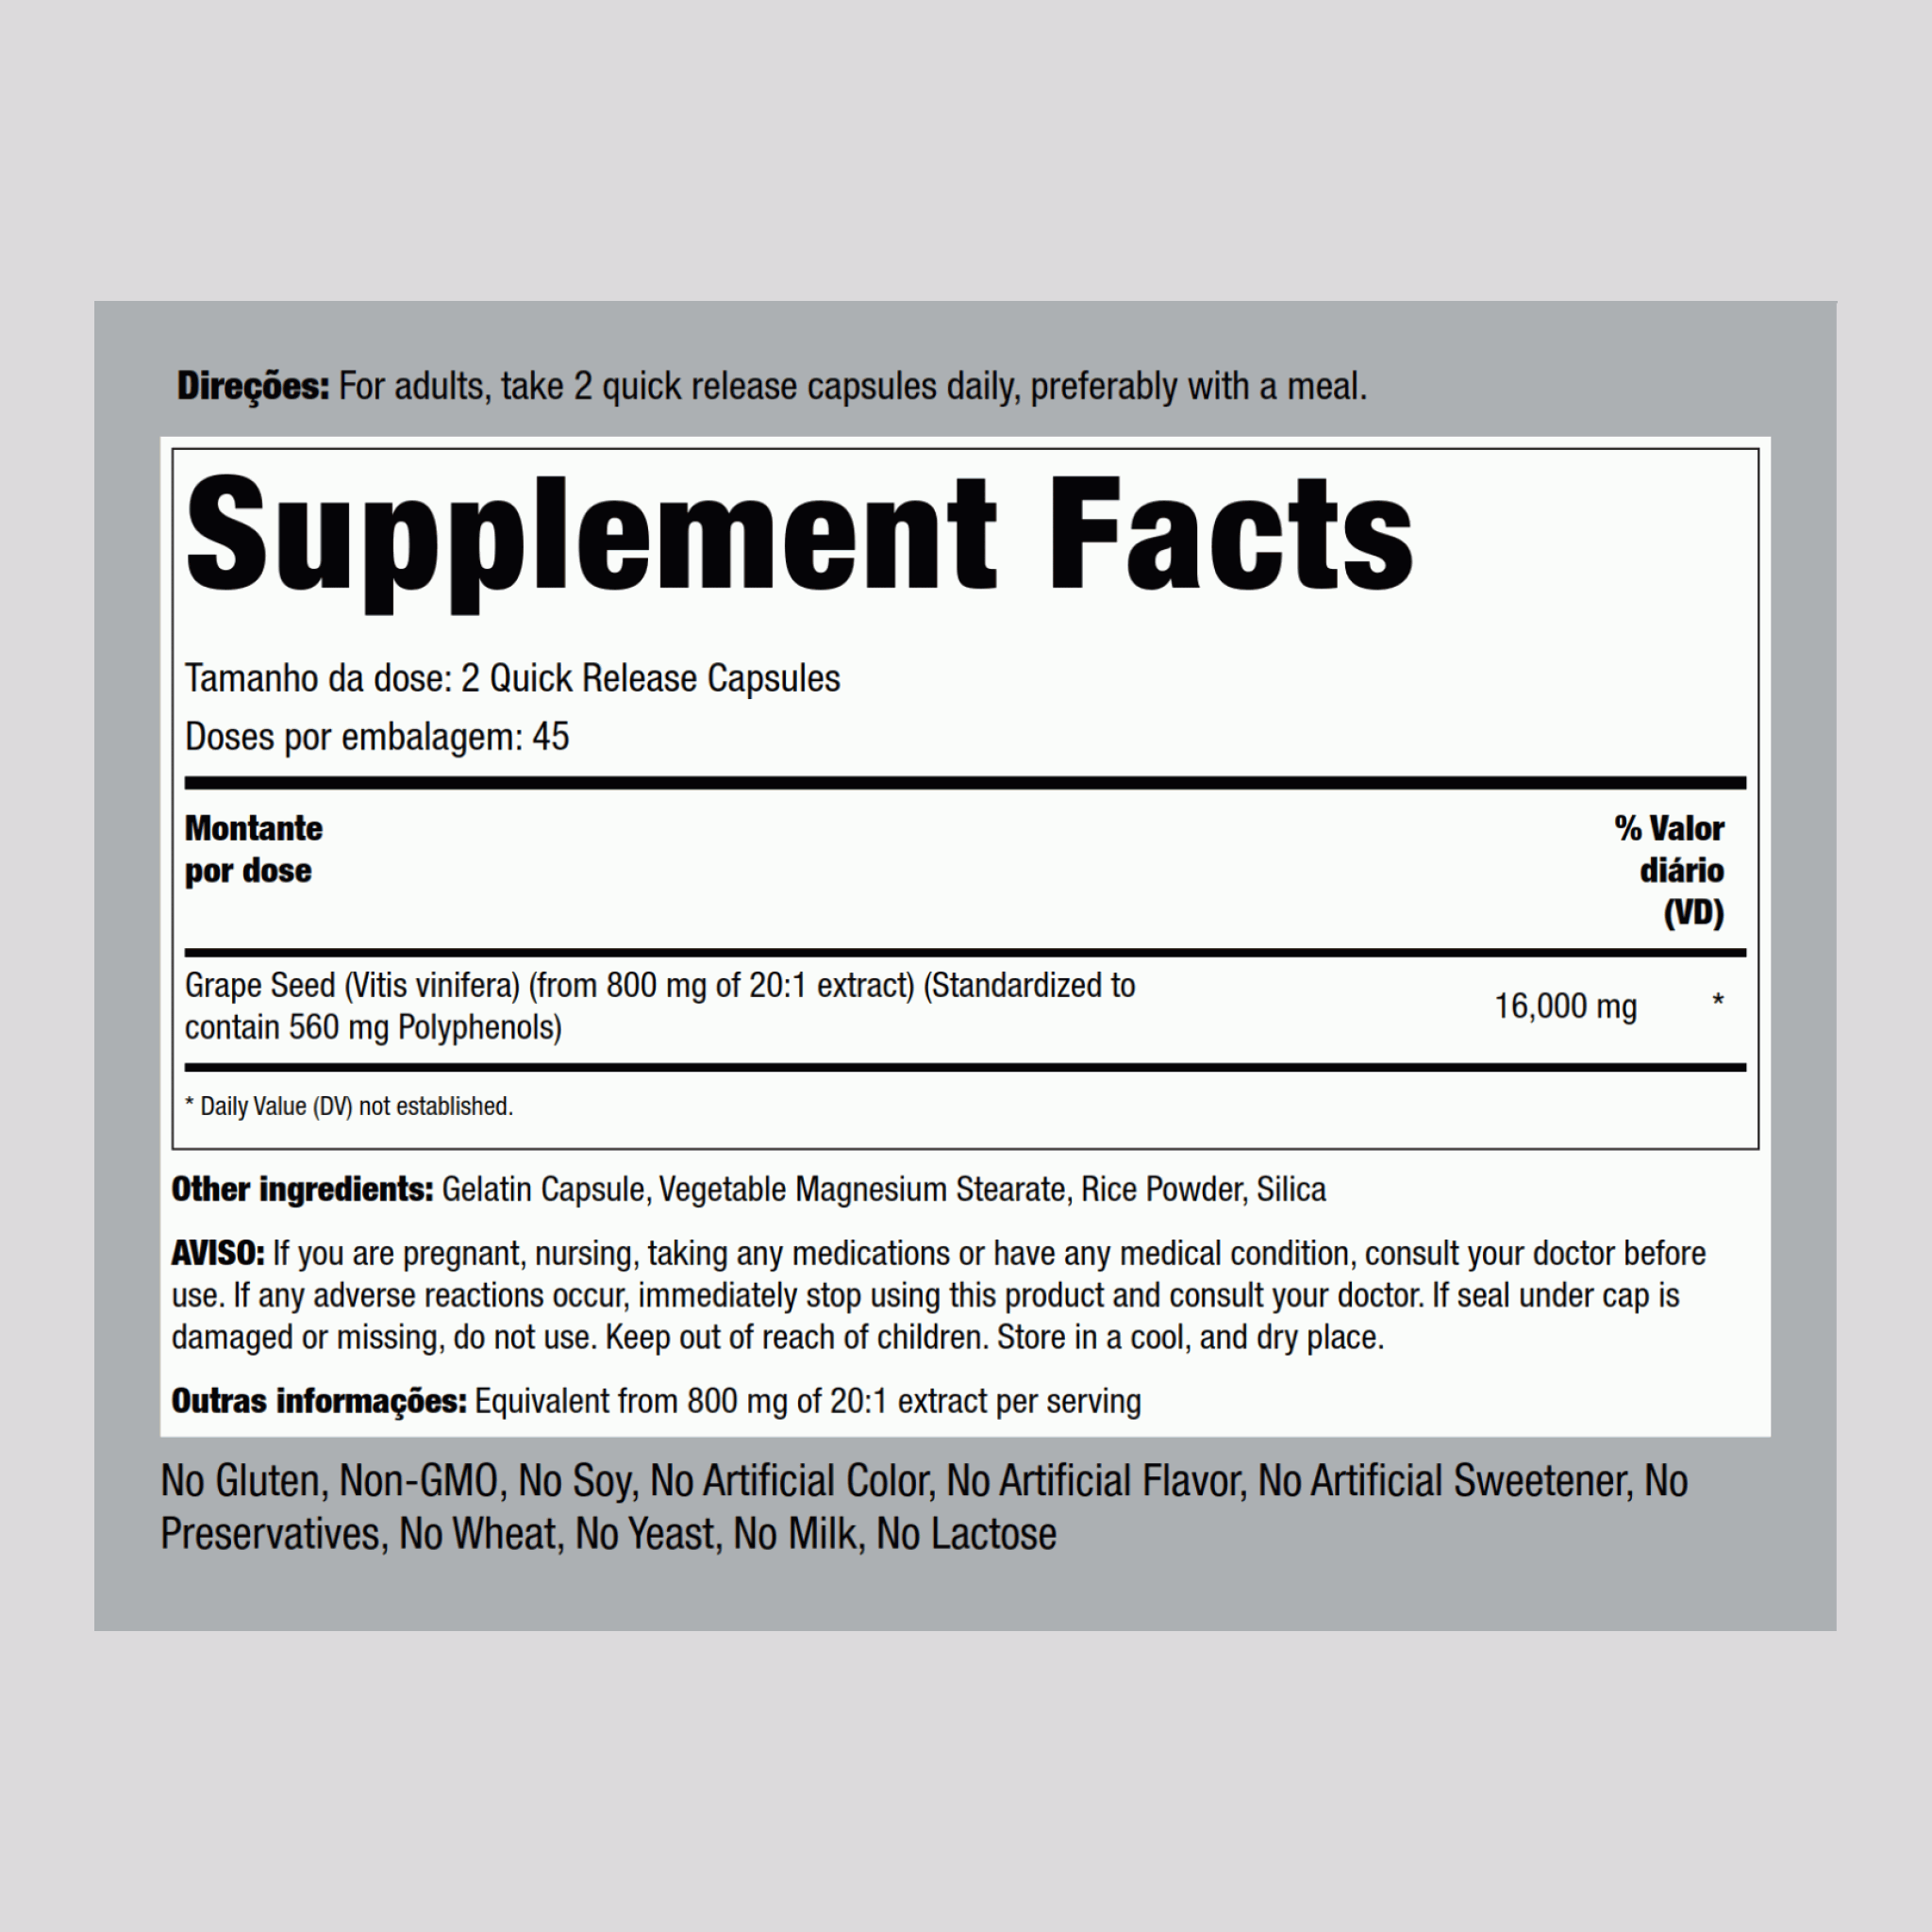 Extrato de grainha de uva  16,000 mg (por dose) 90 Cápsulas de Rápida Absorção     